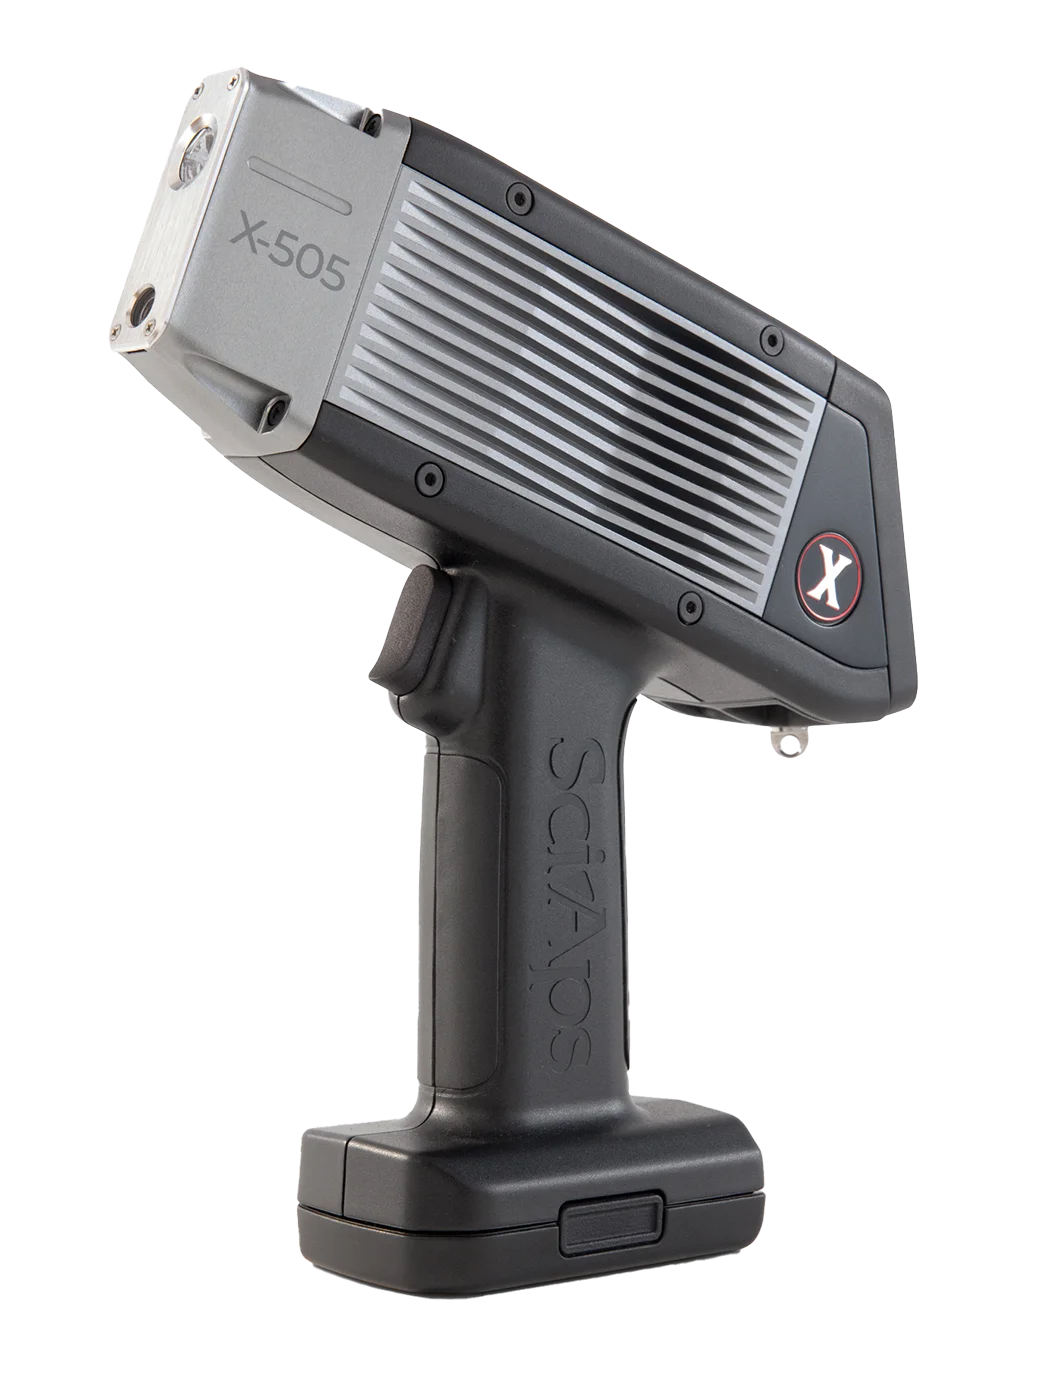 X-505 : Portable XRF analyzer